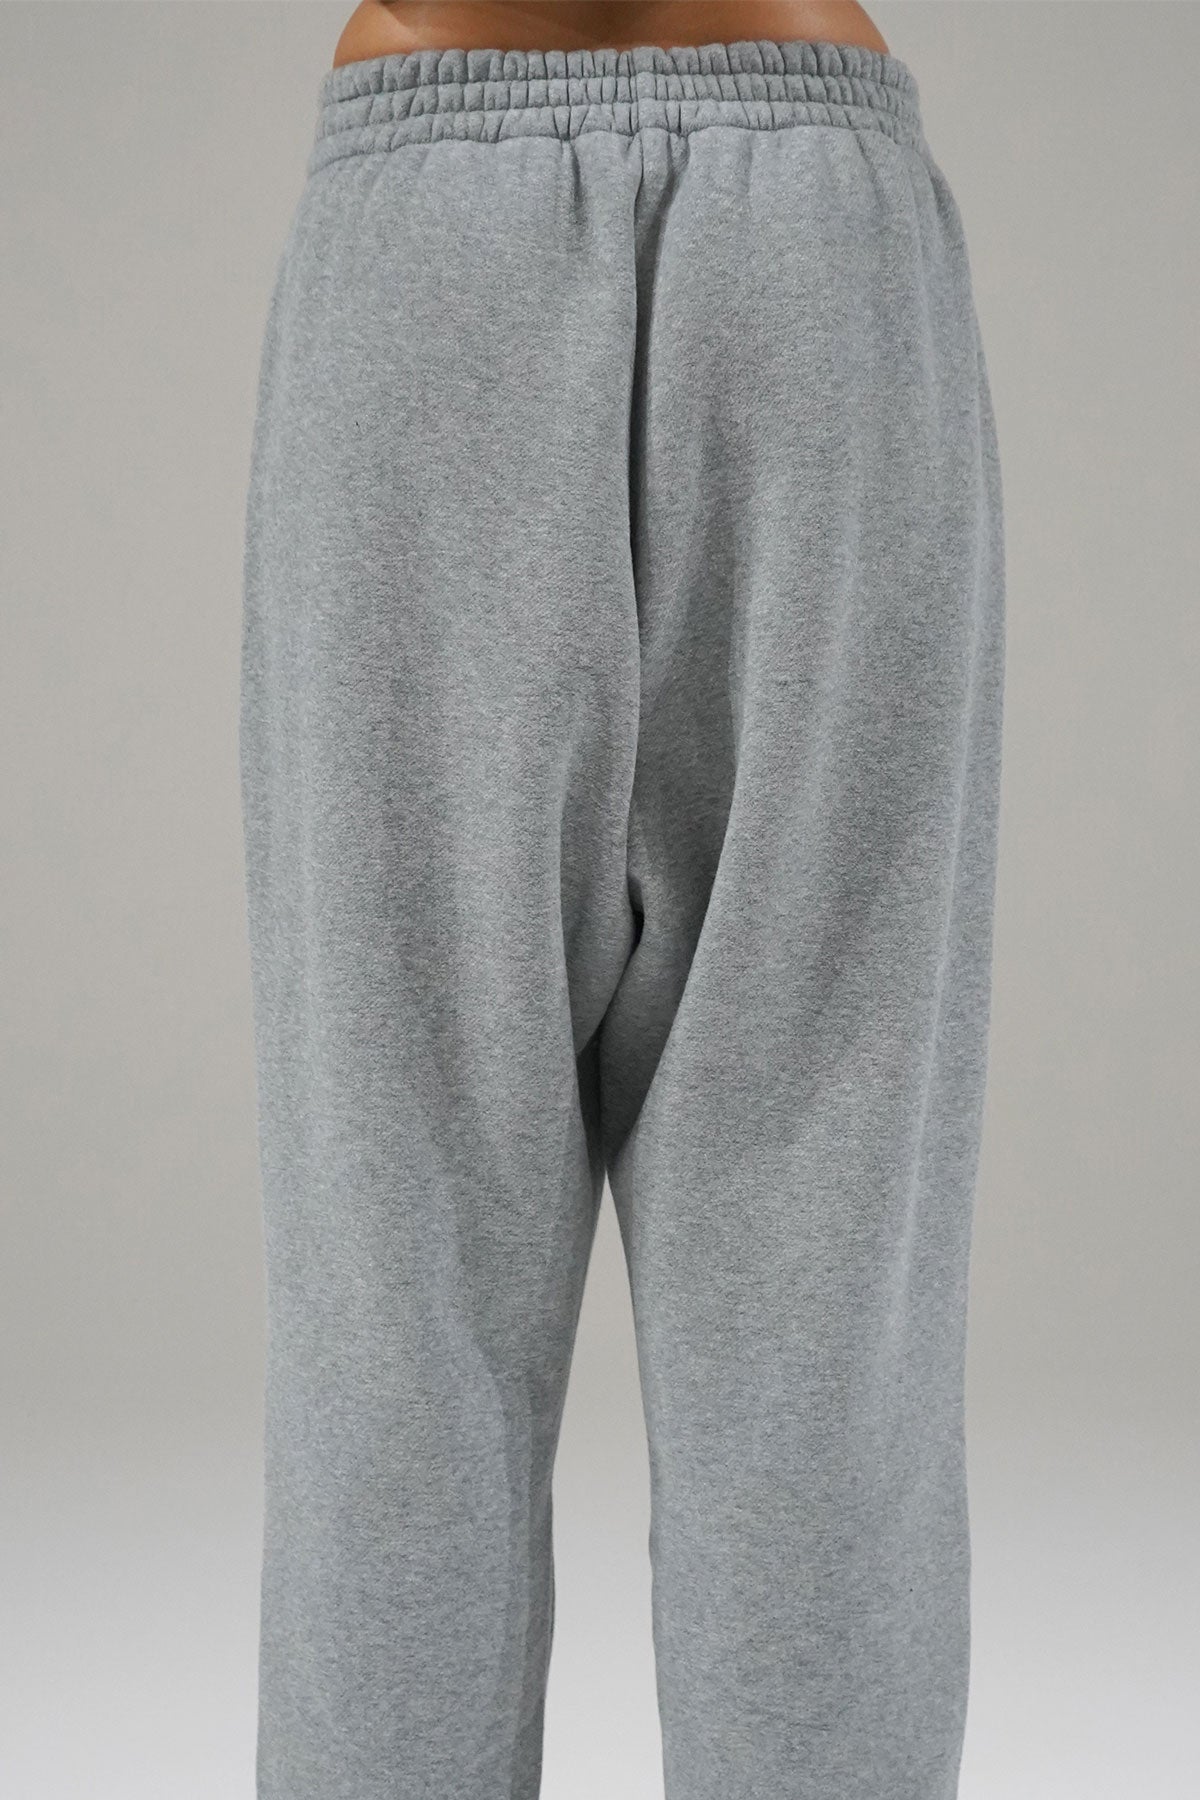 Pantaloni della tuta LNA anni '80 in grigio erica